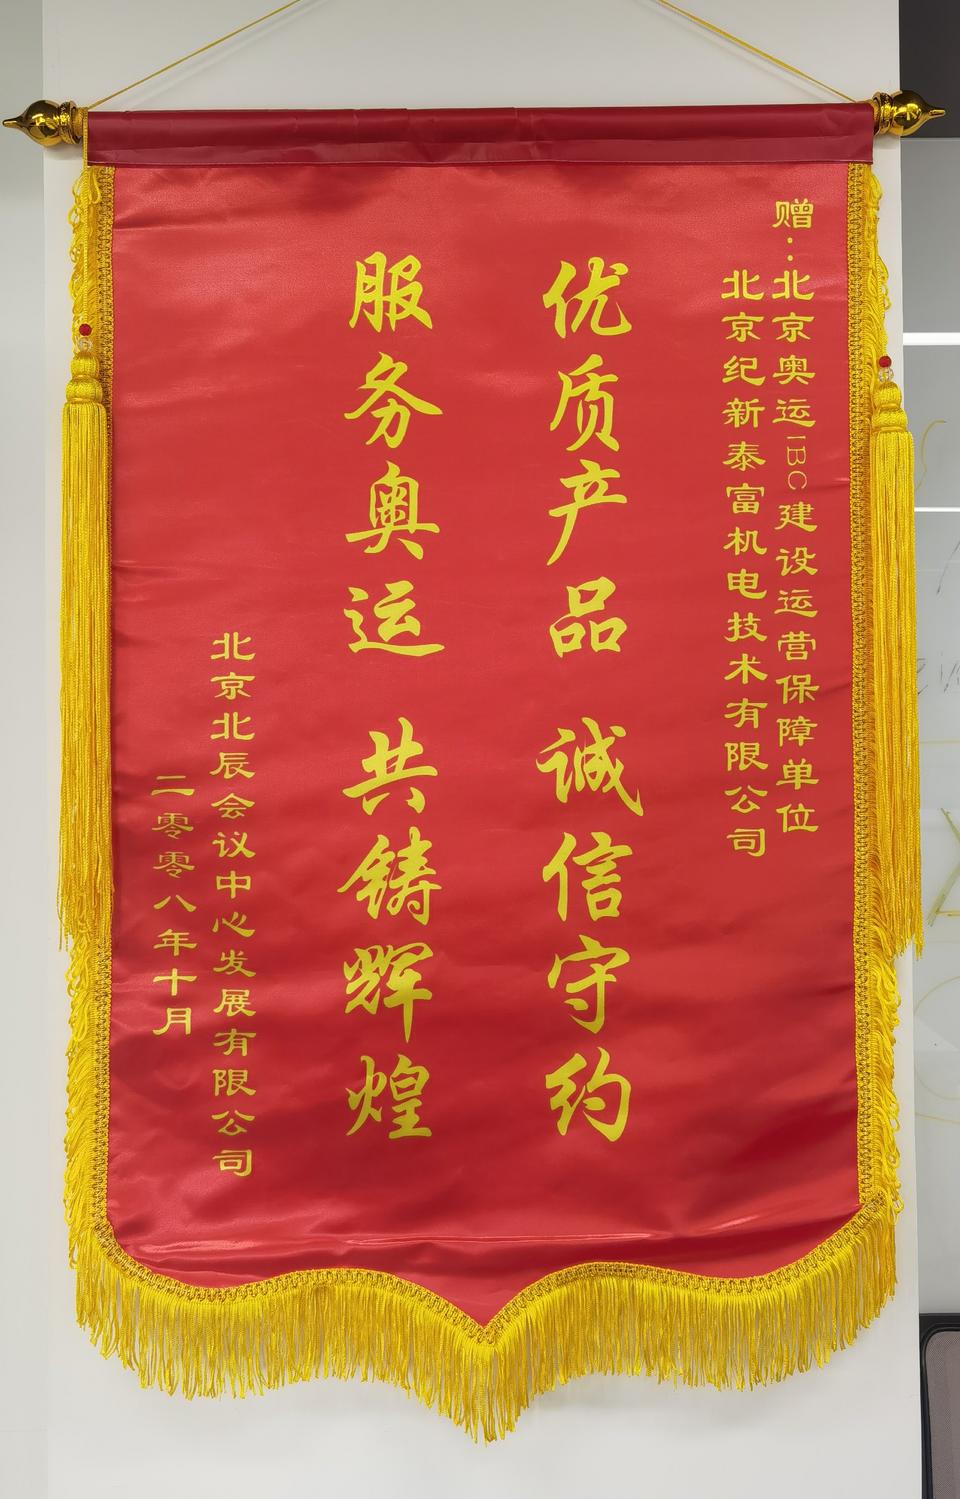 2008年北京奥运会“保驾护航”荣誉锦旗